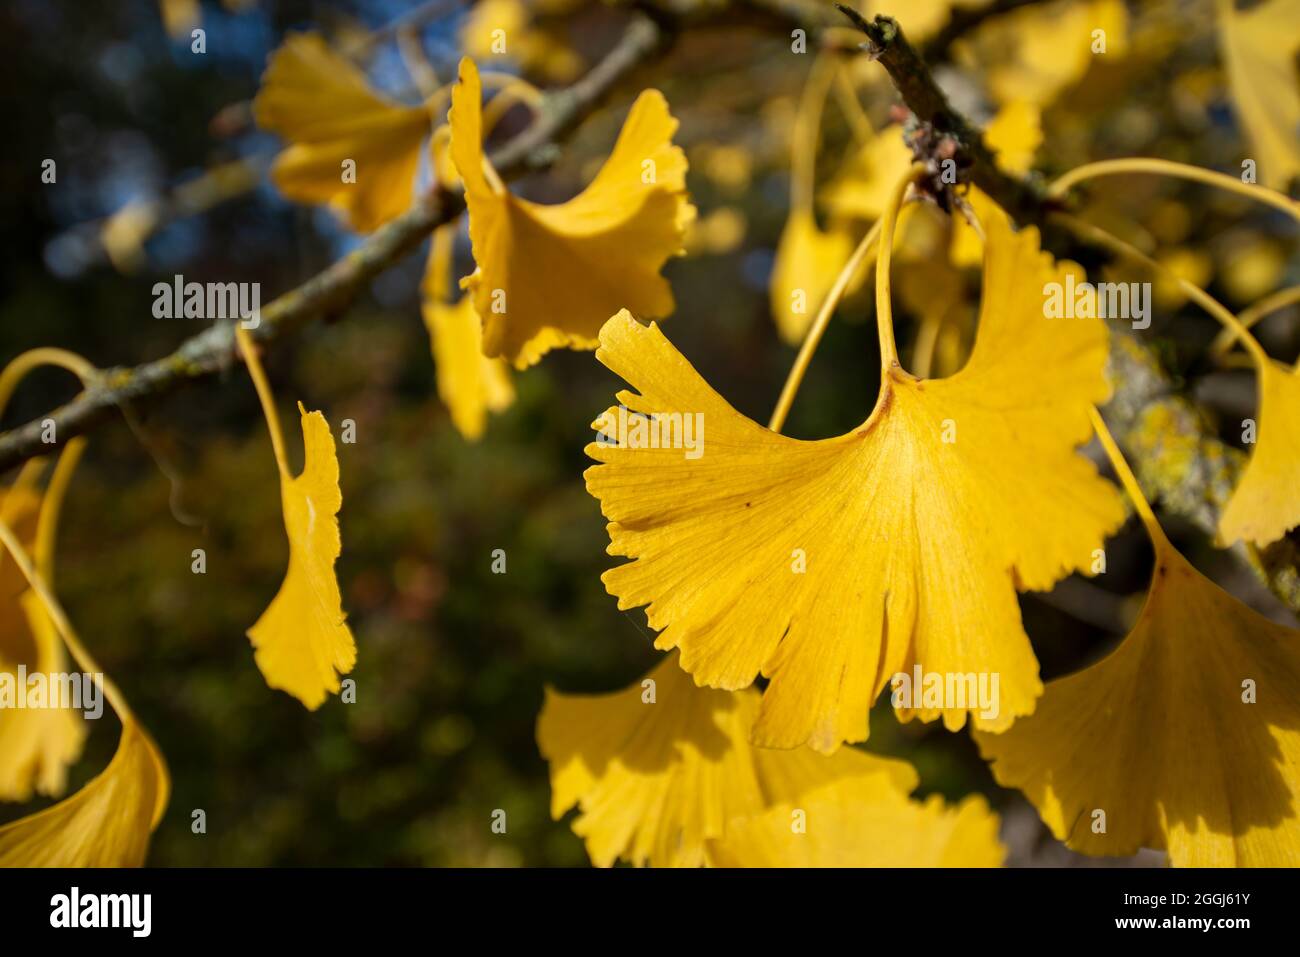 Nahaufnahme eines gelben Gingko biloba Blattes auf einem Baum im Herbst Stockfoto